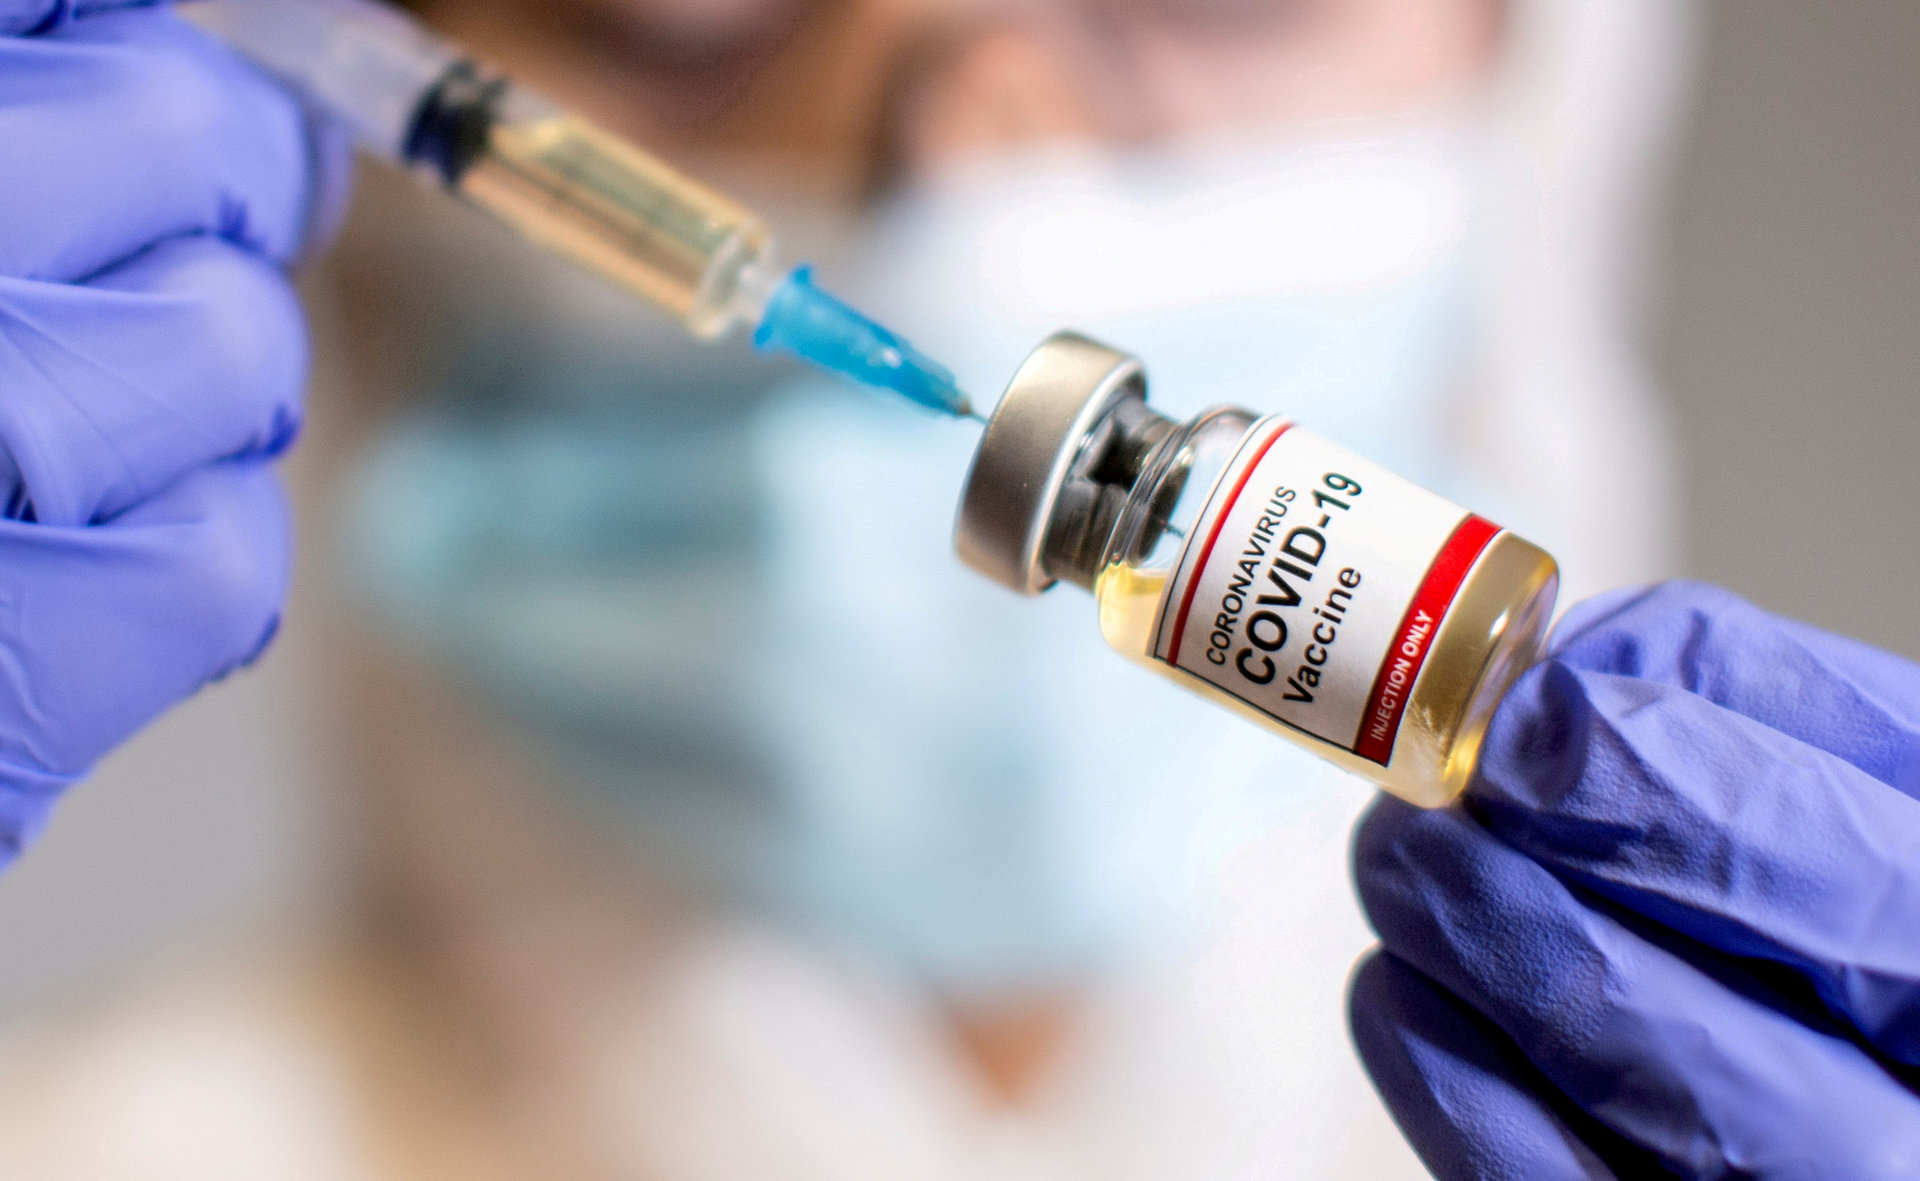 Εμβολιασμός: Άνοιξε συζήτηση για 4η δόση – Σενάριο λήξης πιστοποιητικών ως κίνητρο για αναμνηστική δόση